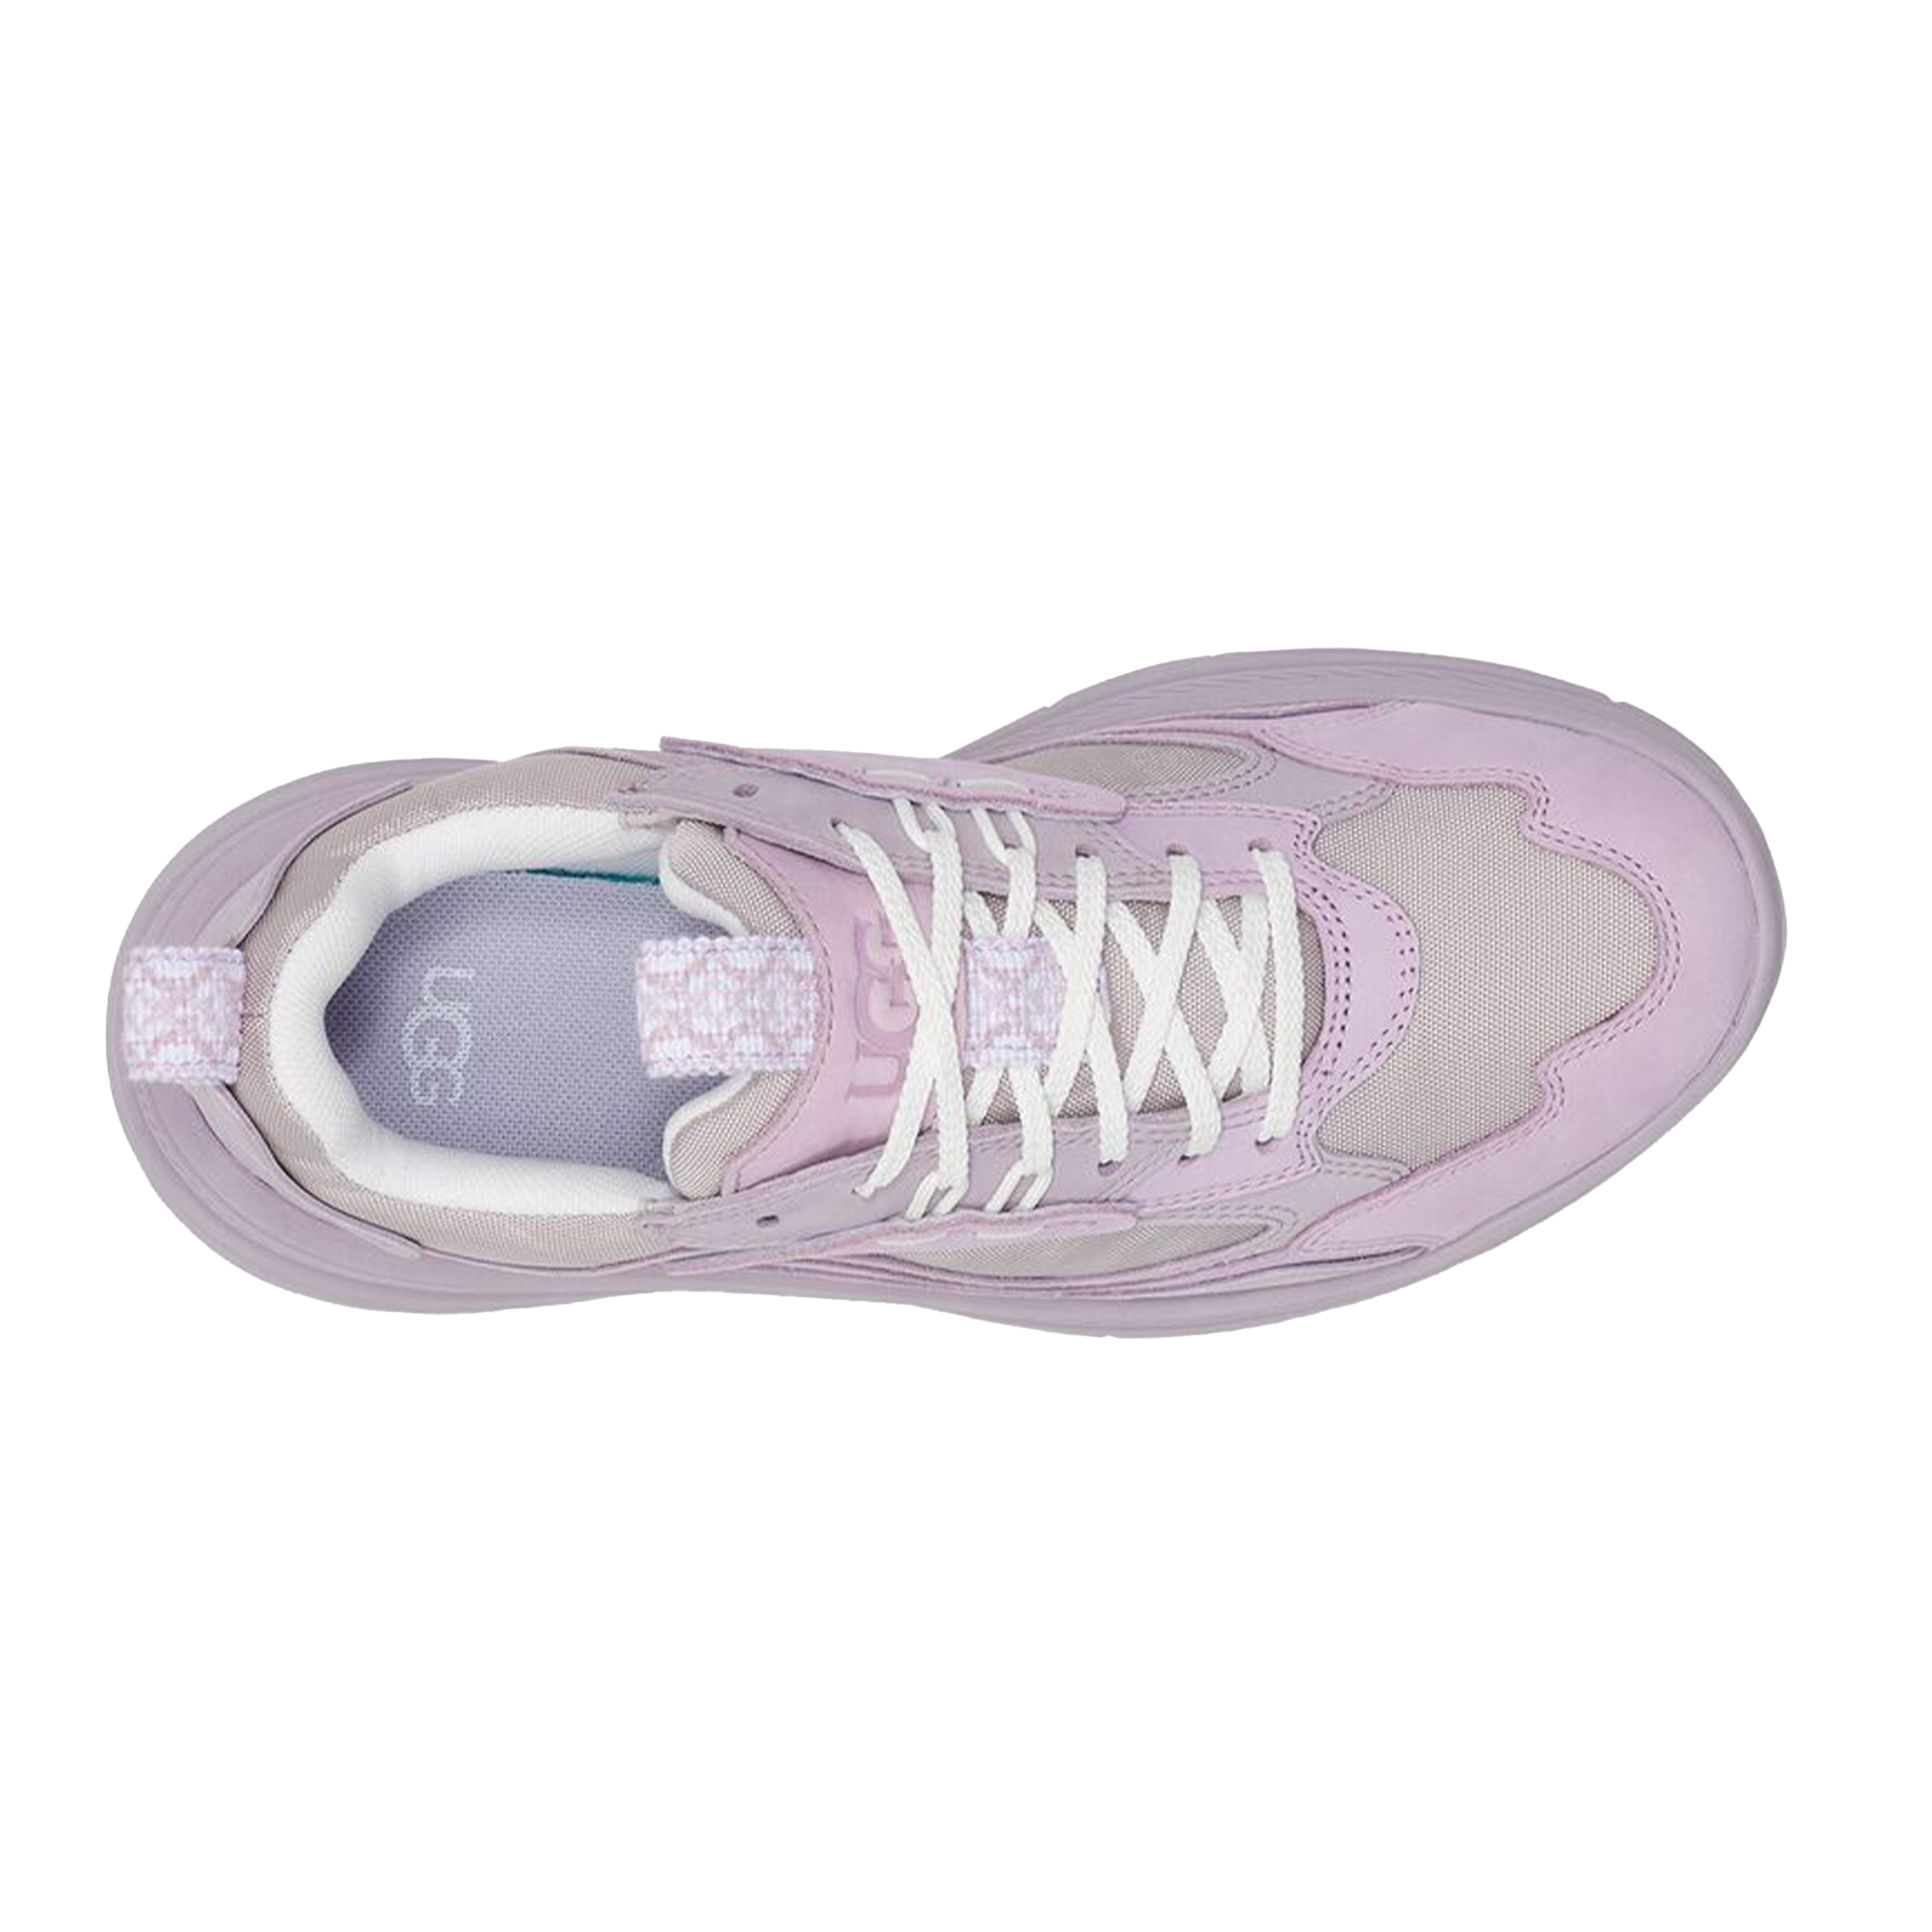 Ugg Australia Sneaker CA1 Mesh Lavender Fog Multi